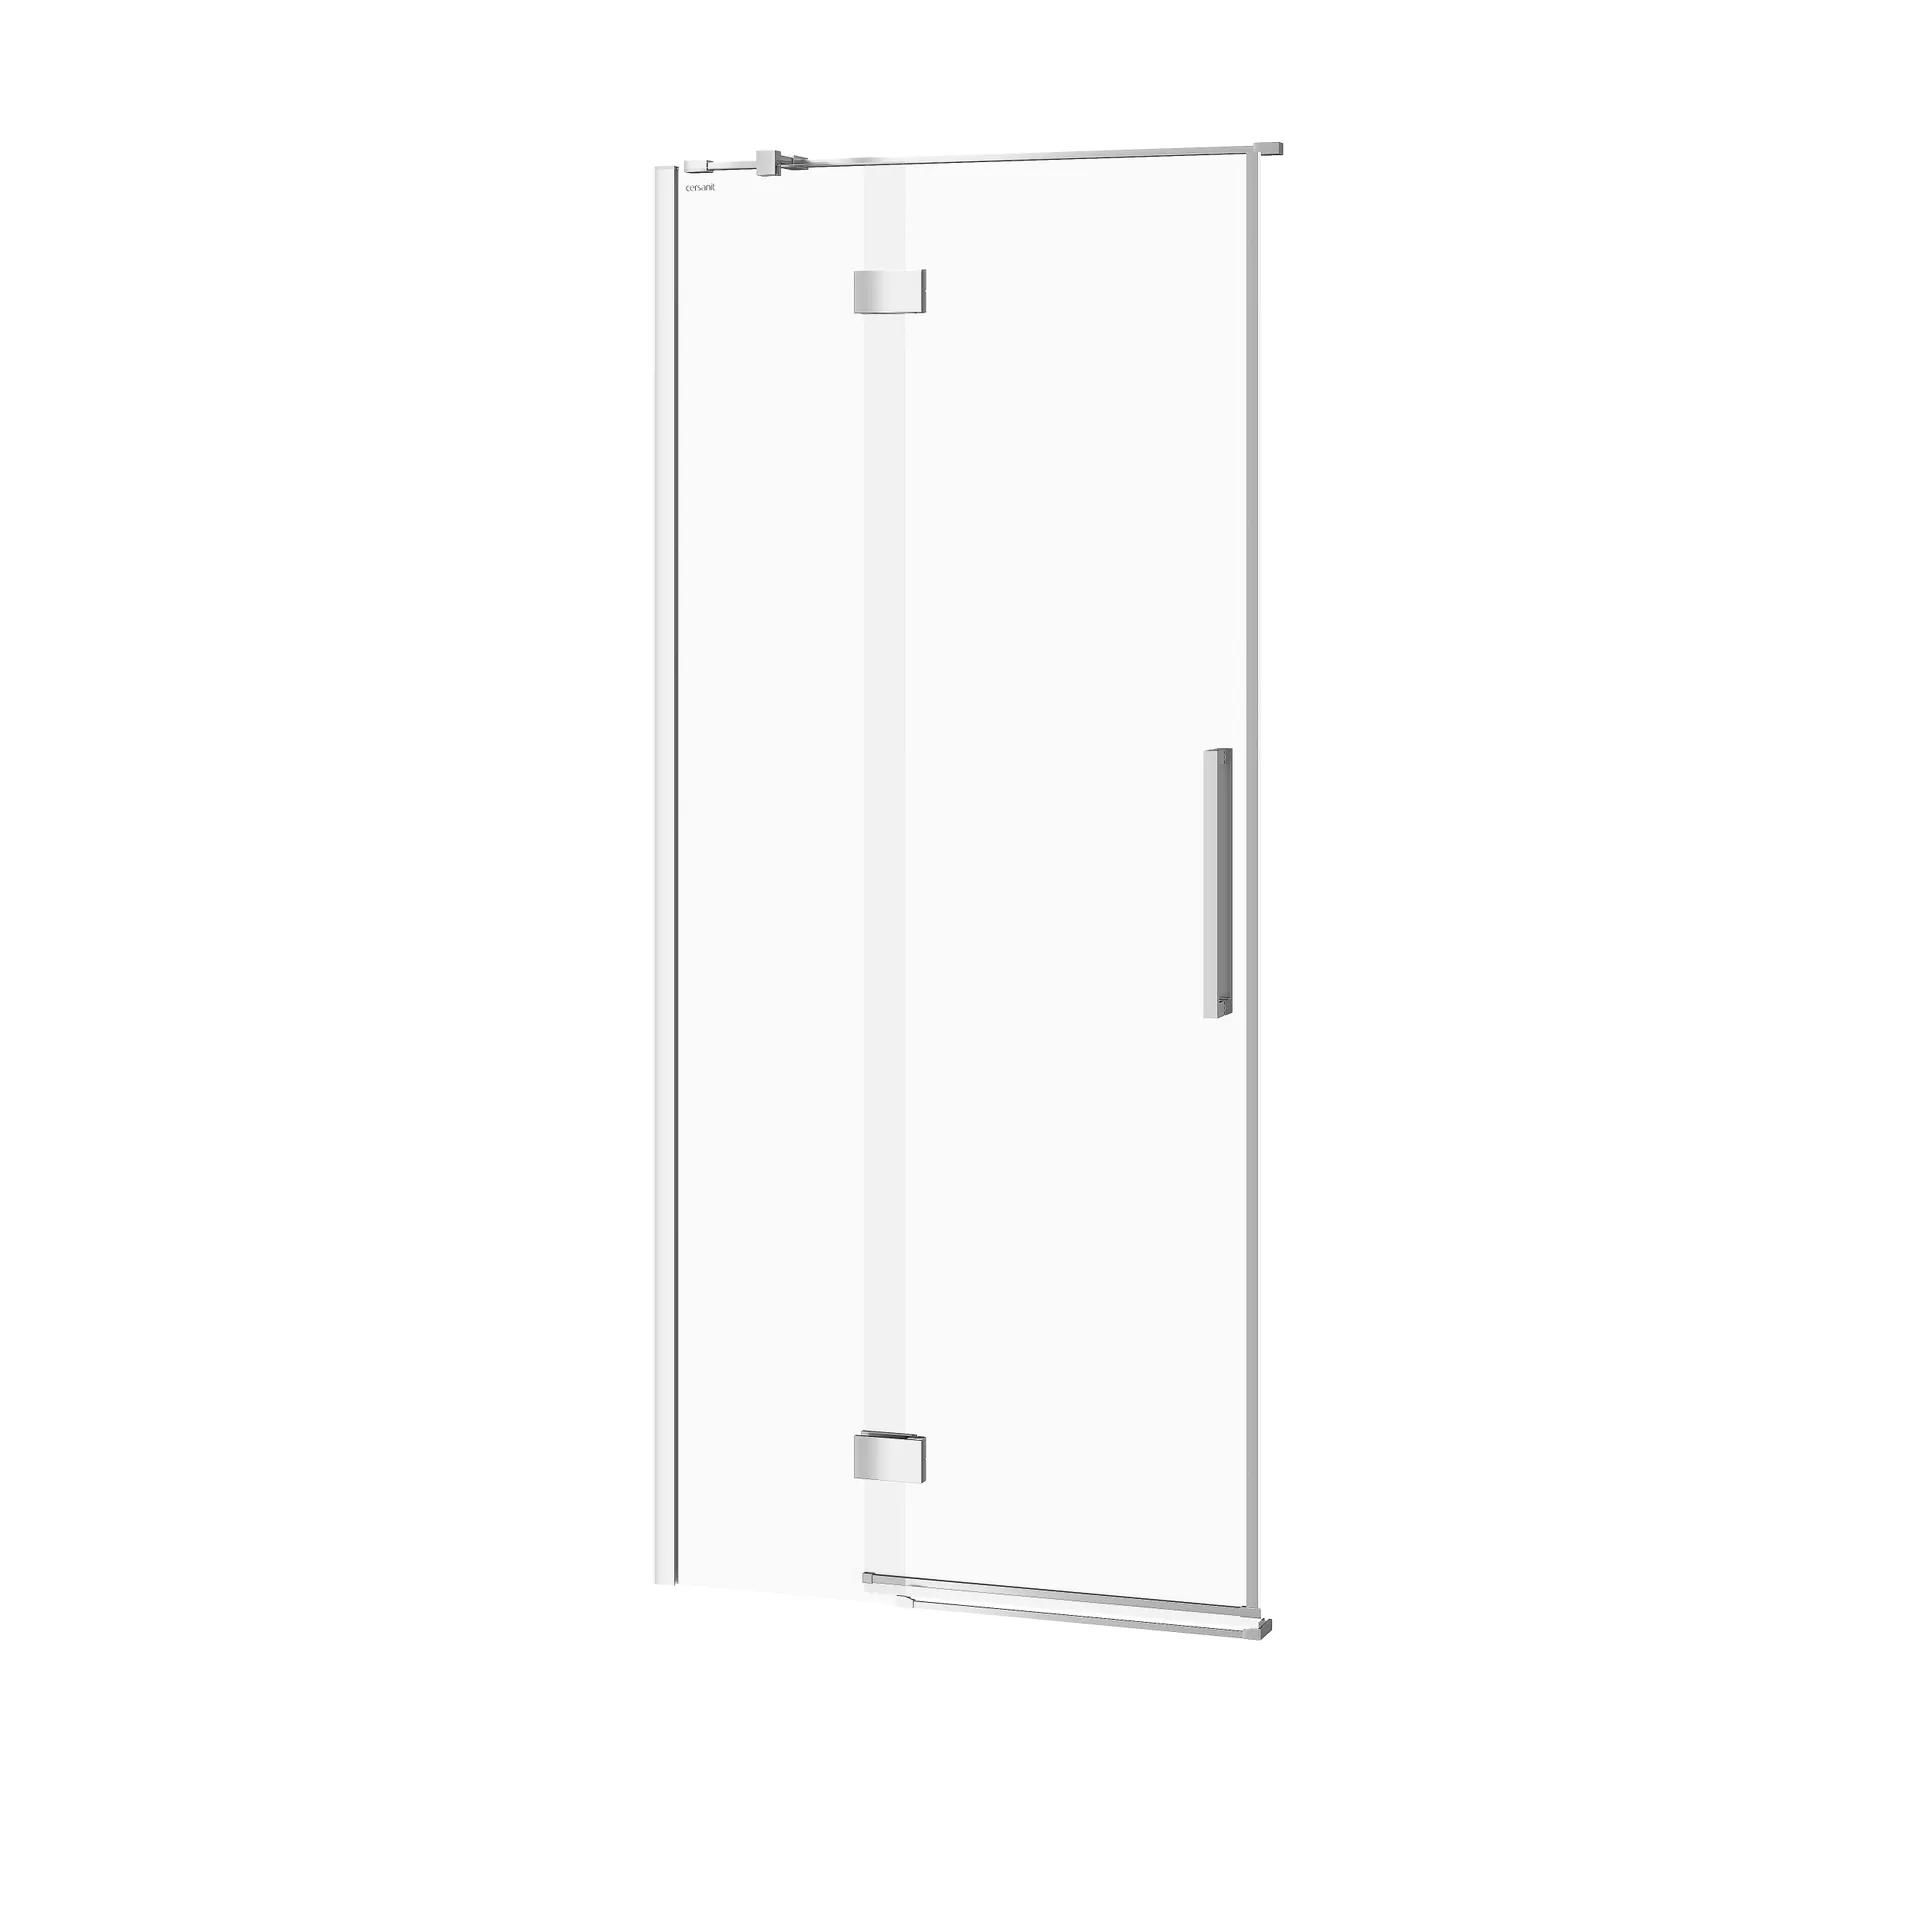 Drzwi prysznicowe Cersanit Crea 90X200 lewe chrom transparentne S159-005